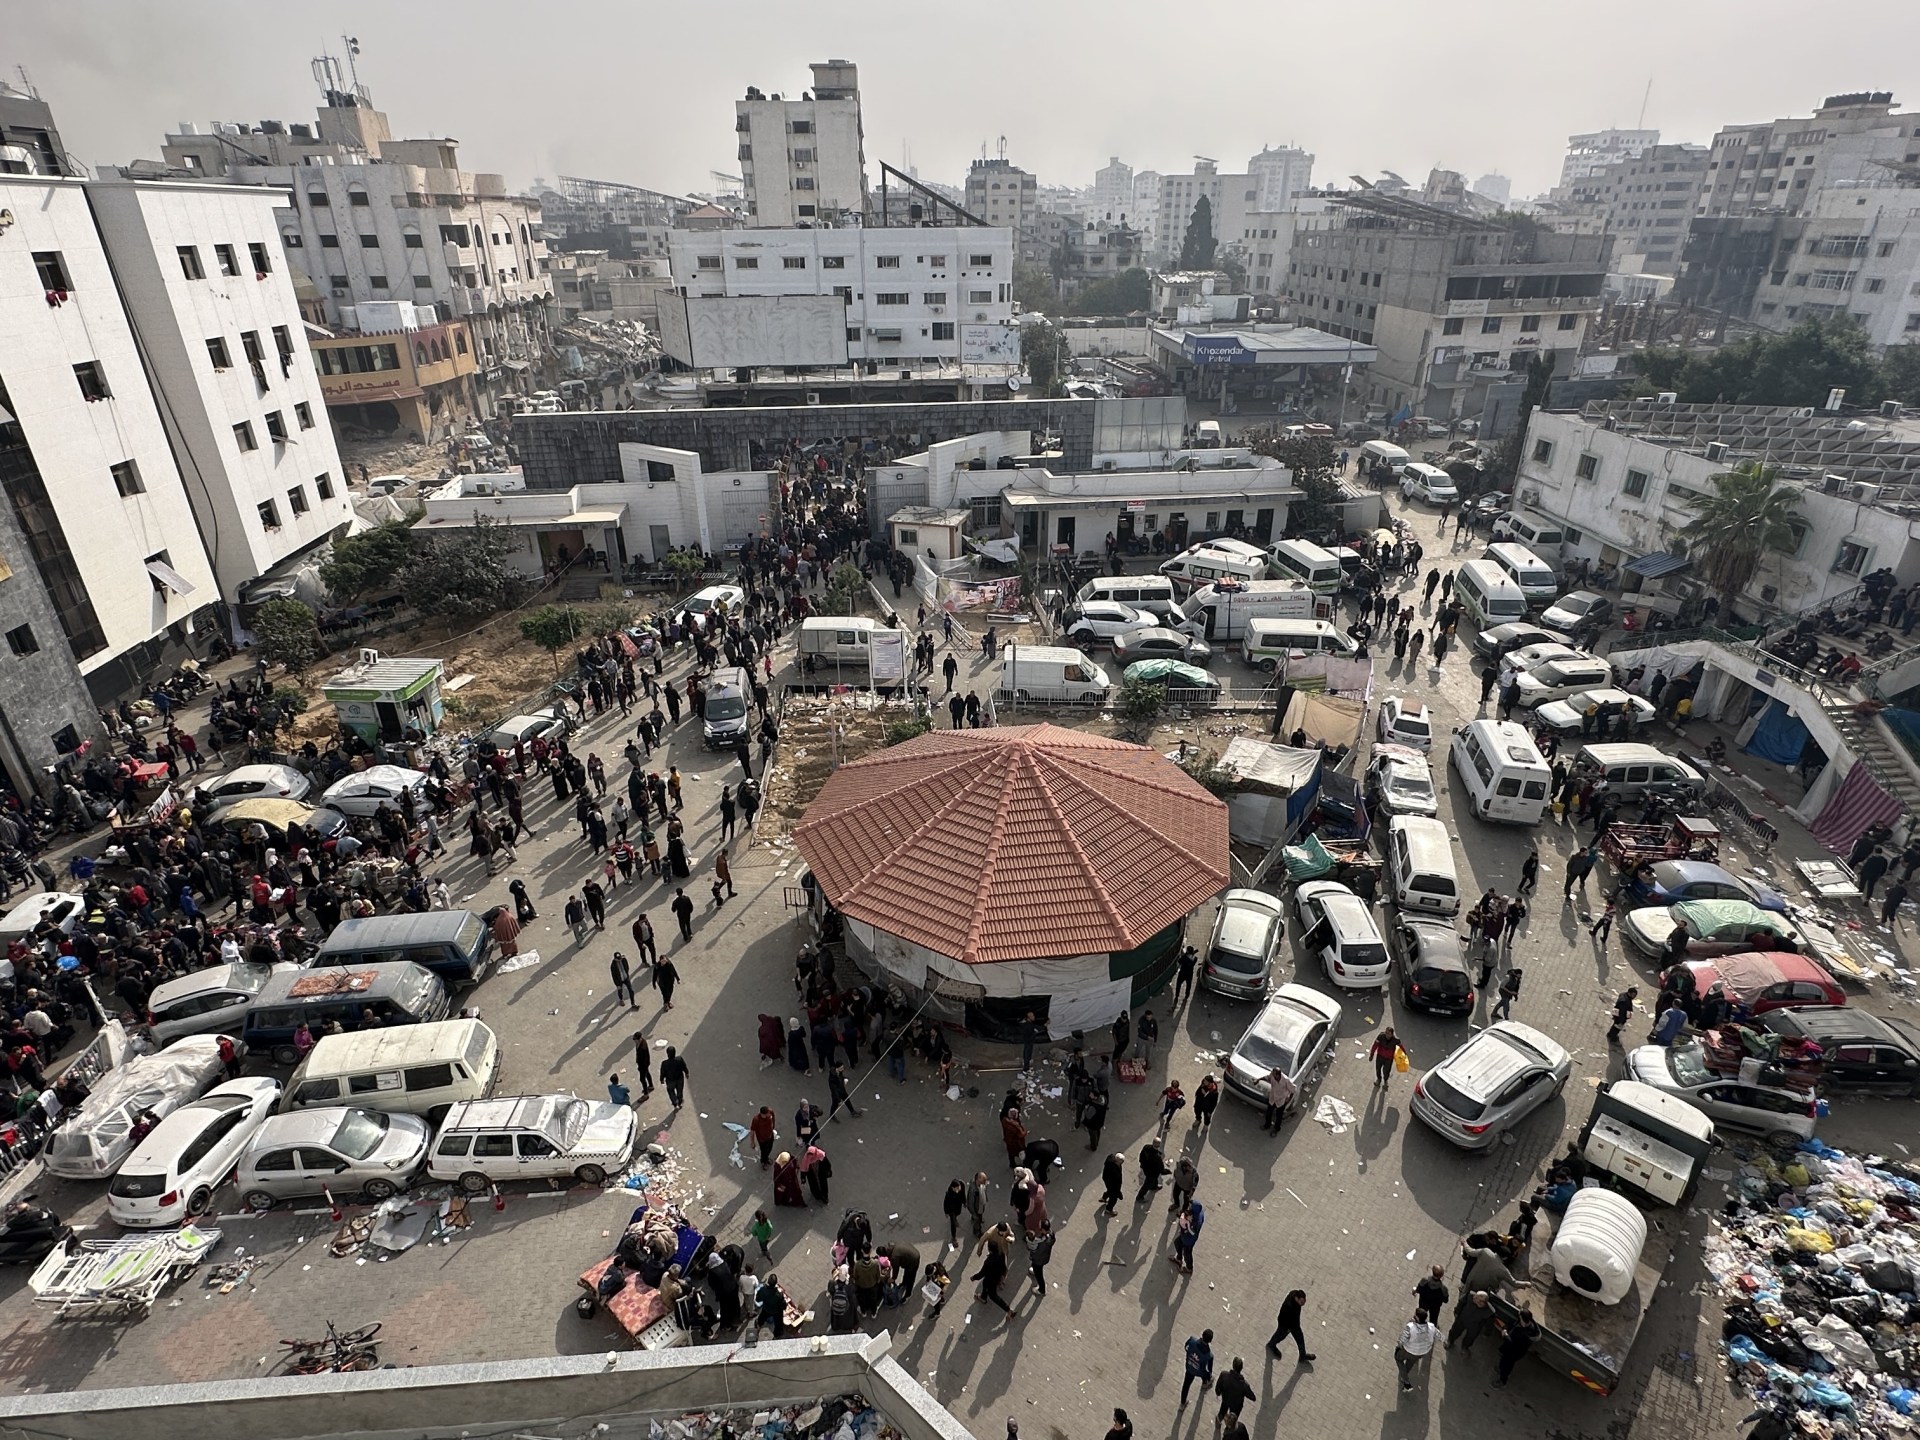 الاحتلال يروع النازحين بمجمع الشفاء ويفجر أحد مبانيه | أخبار – البوكس نيوز